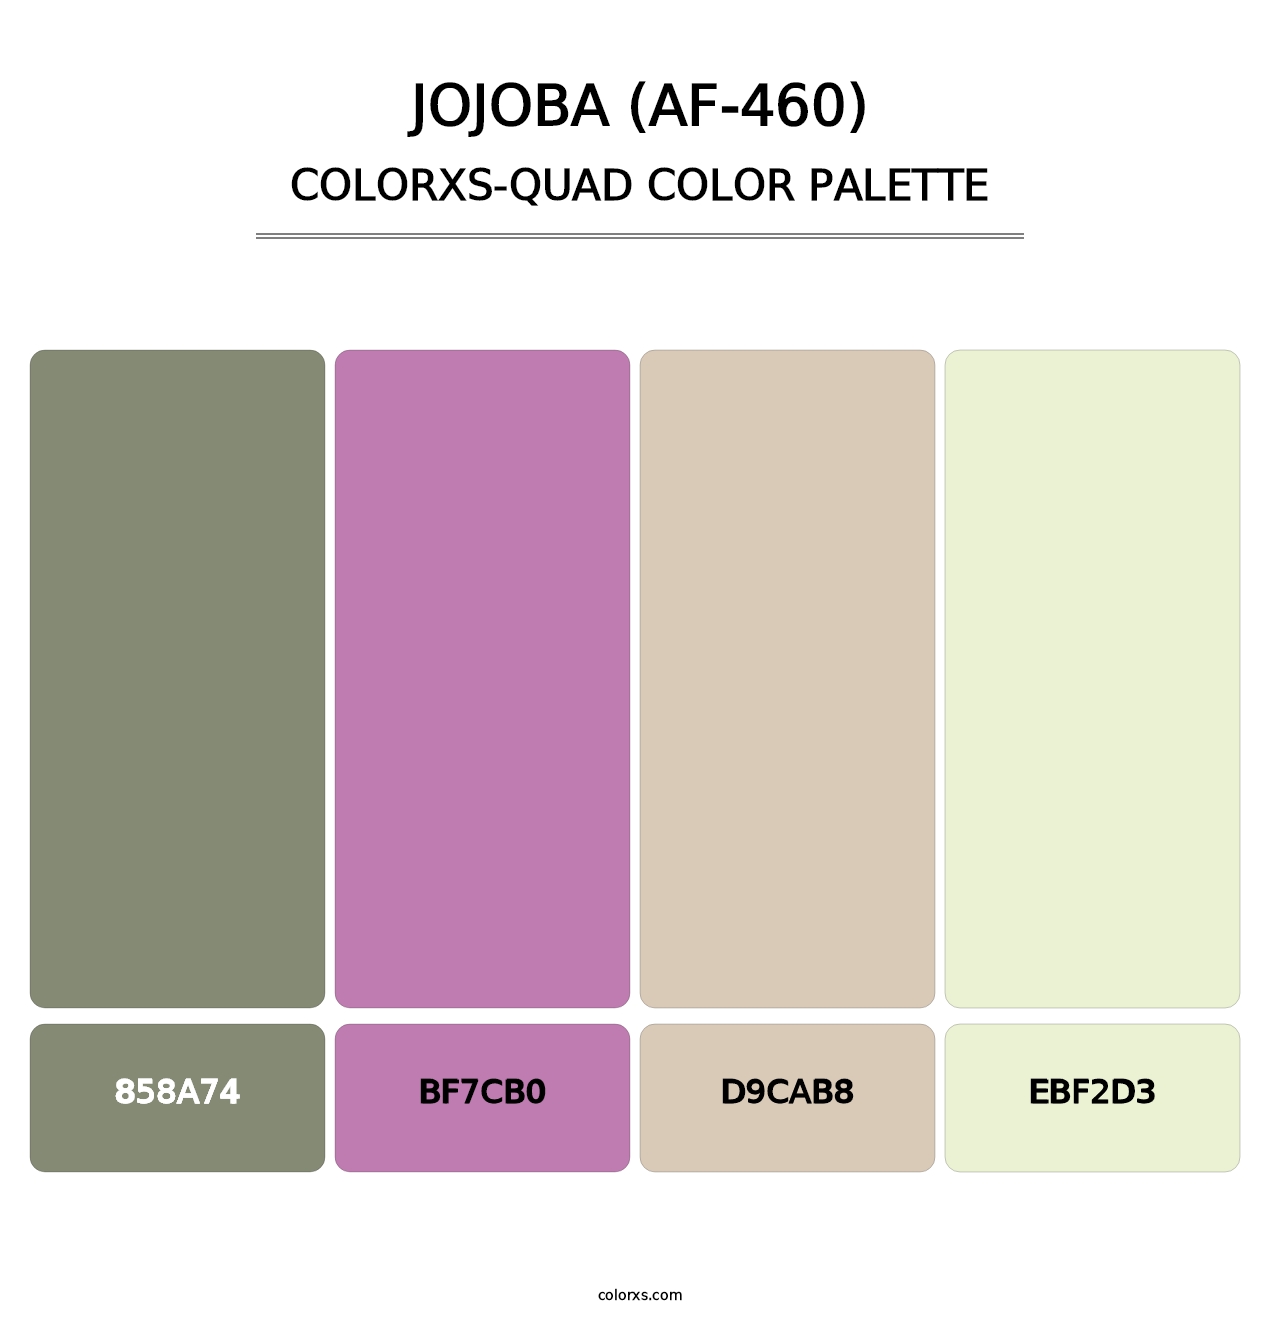 Jojoba (AF-460) - Colorxs Quad Palette